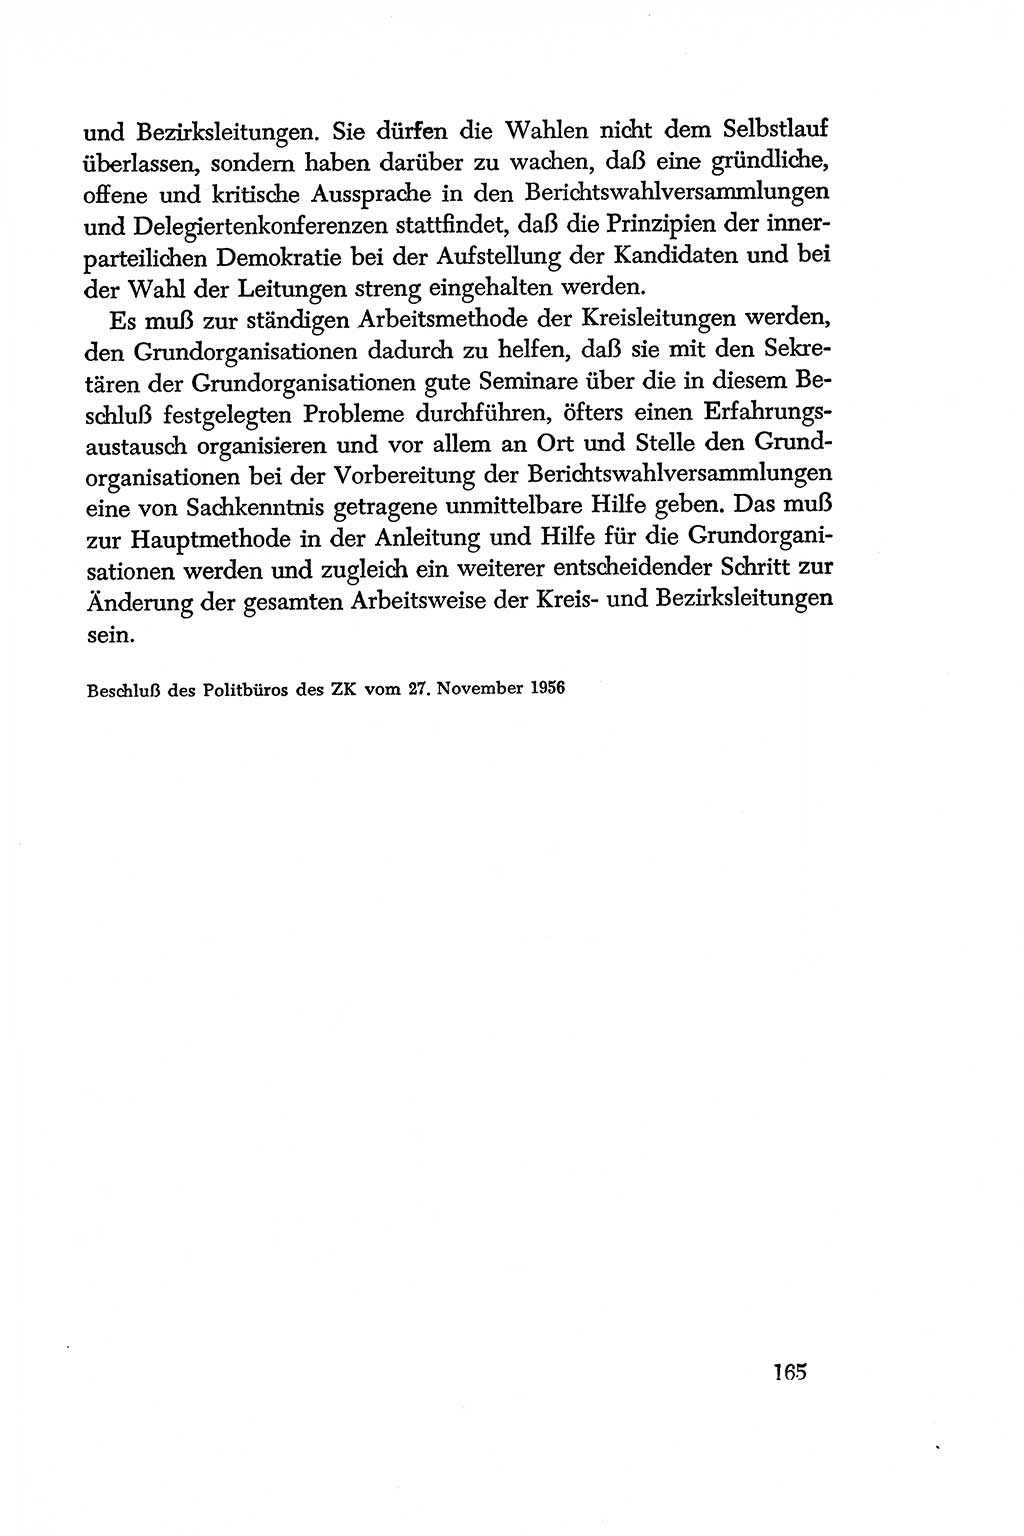 Dokumente der Sozialistischen Einheitspartei Deutschlands (SED) [Deutsche Demokratische Republik (DDR)] 1956-1957, Seite 165 (Dok. SED DDR 1956-1957, S. 165)